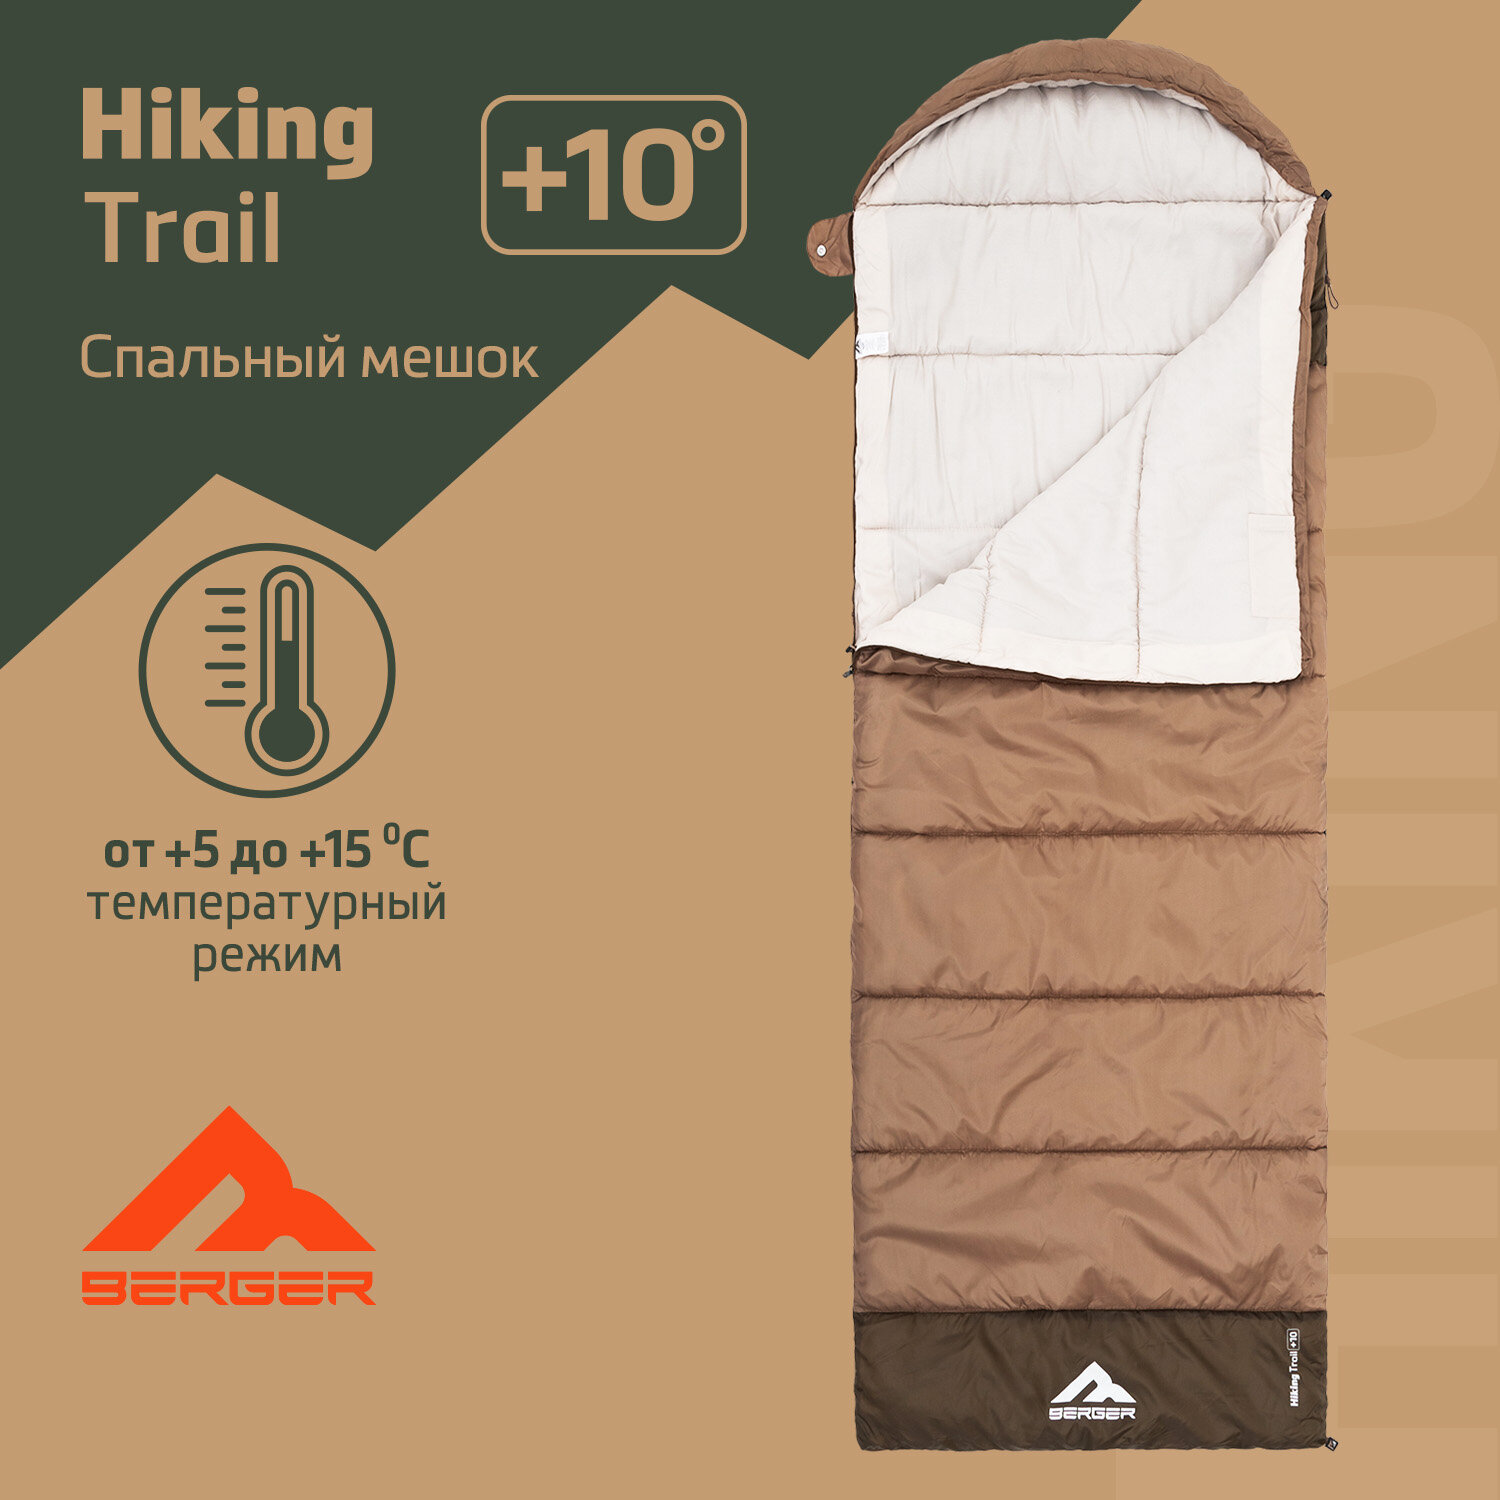 Спальный мешок Berger Hiking Trail +10 BHTR24SB-02, коричневый